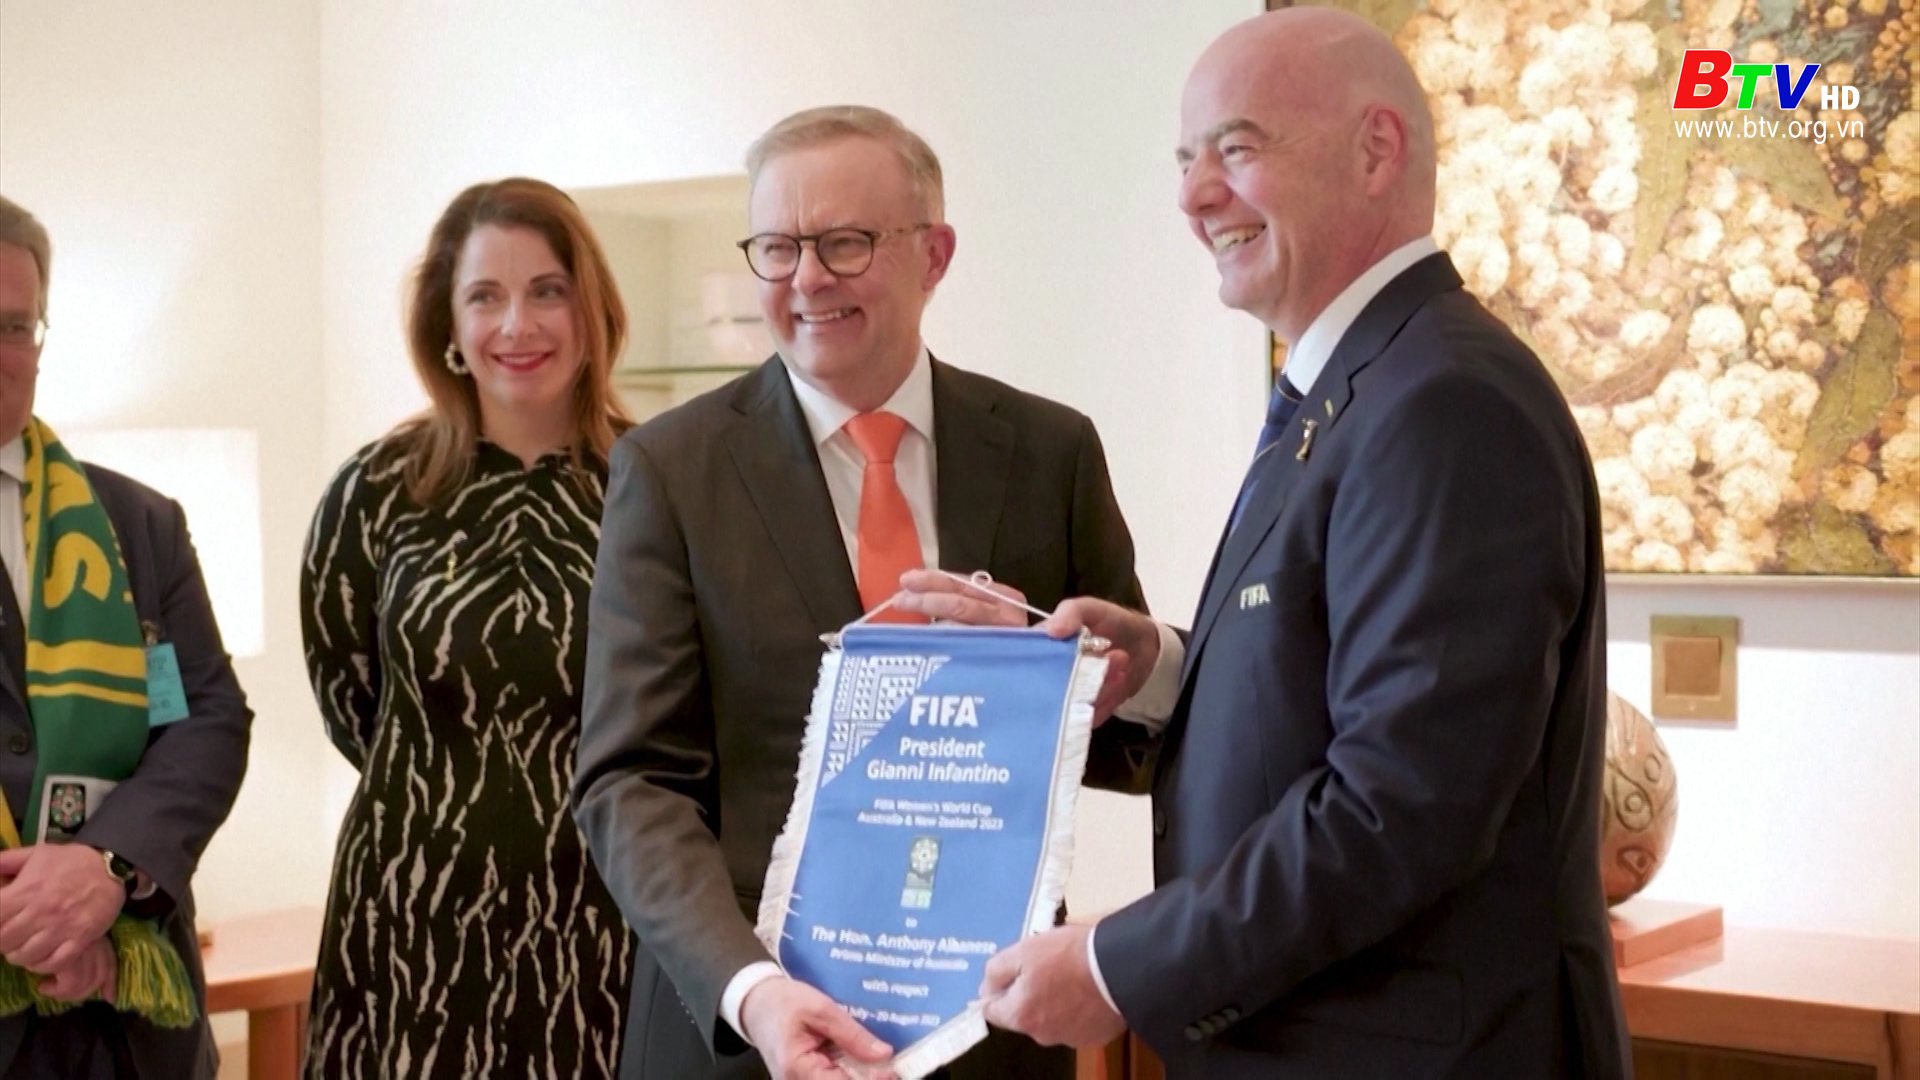 Thủ tướng Anthony Albanese đã gặp Chủ tịch FIFA Gianni Infantino